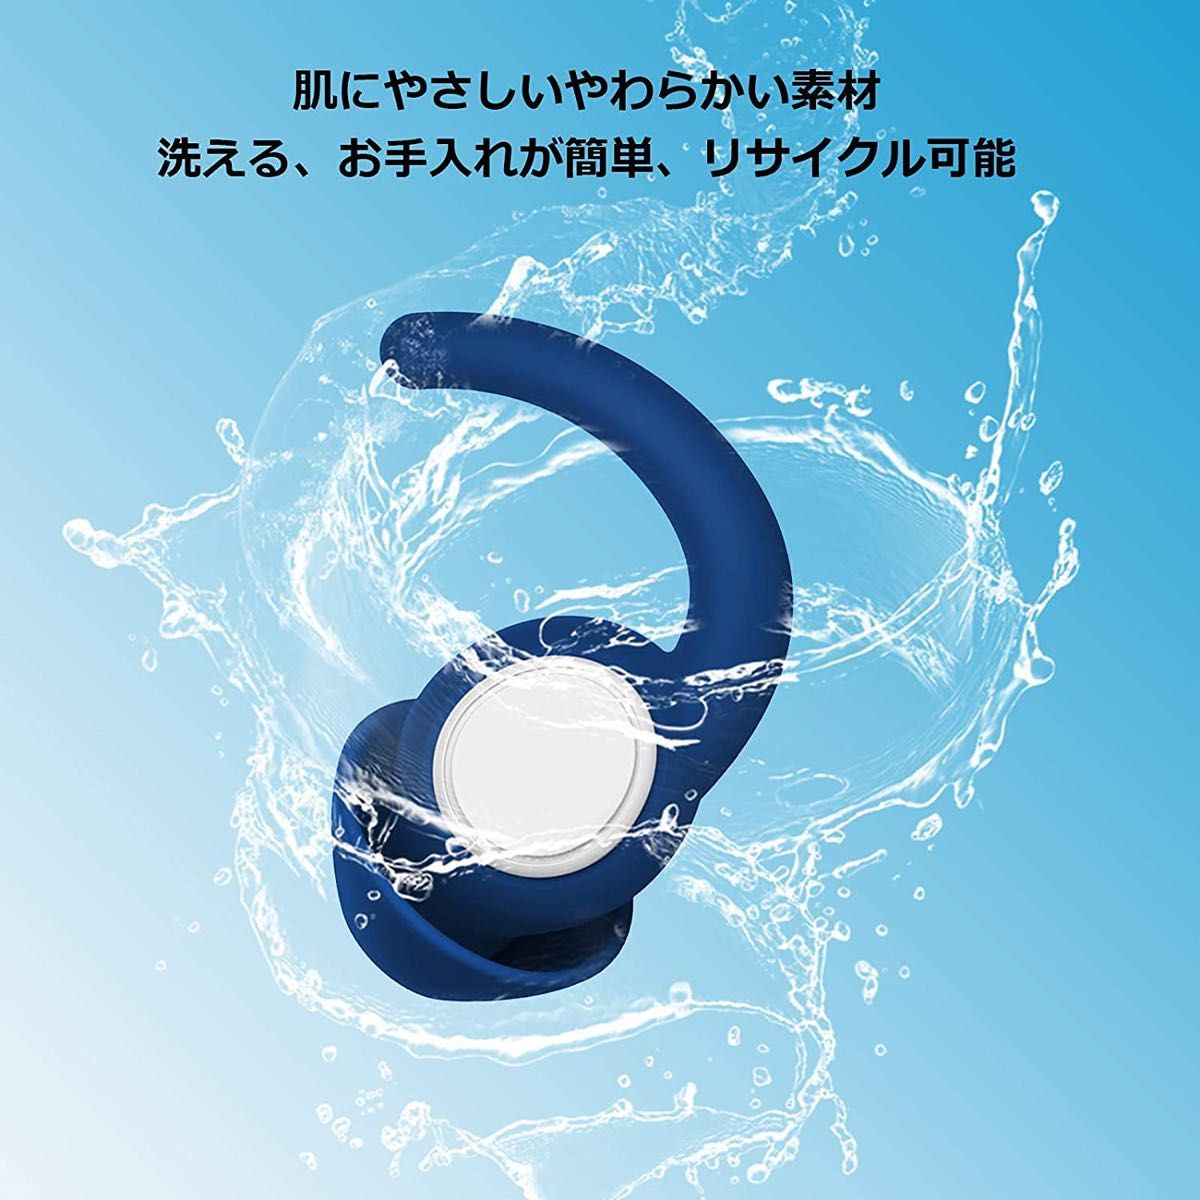 防音耳栓 安眠聴覚過敏 遮音値32dB 睡眠 勉強 ソフトシリコン、フカヒレのデザイン 洗える清潔な耳栓 耳栓 2ペアセット